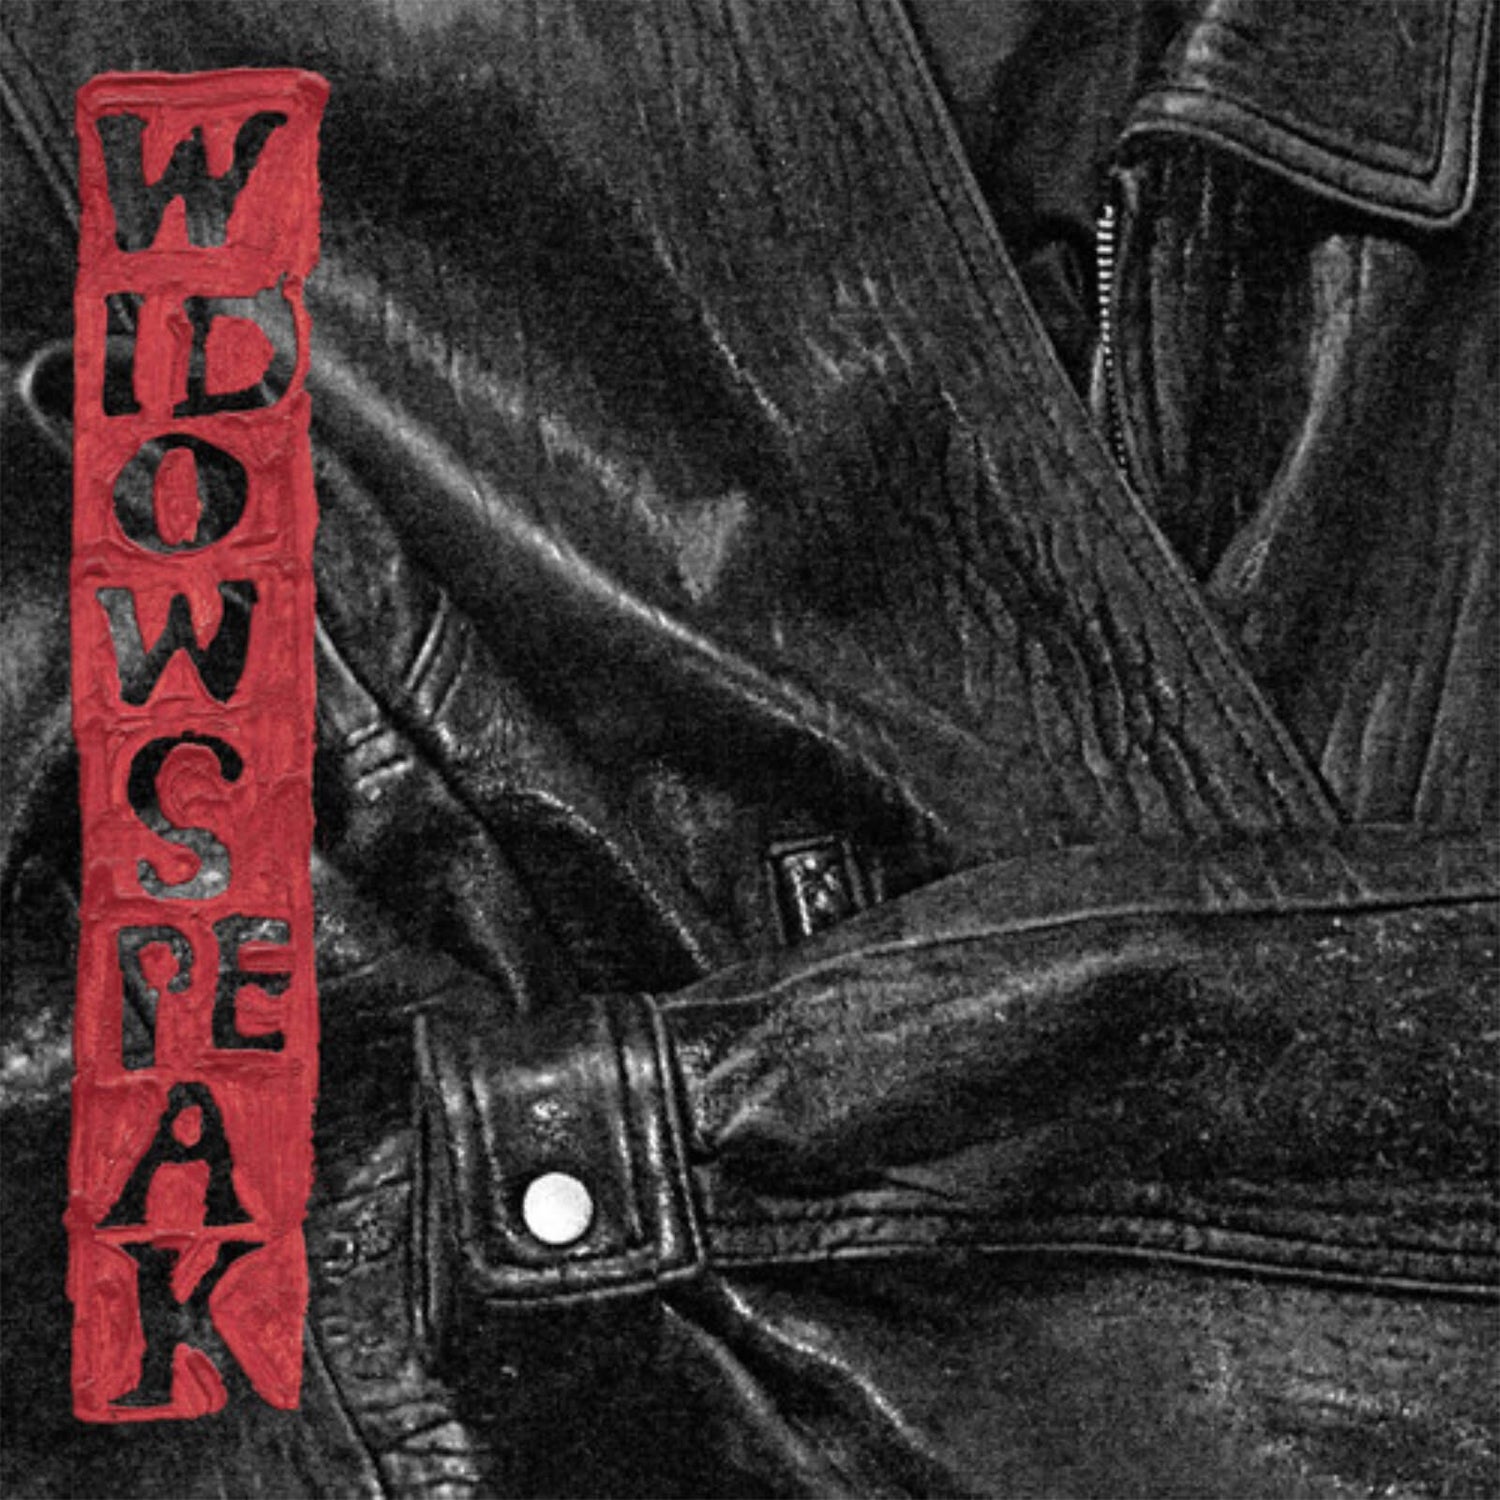 Widowspeak - The Jacket Vinyl (Coke Bottle Clear)